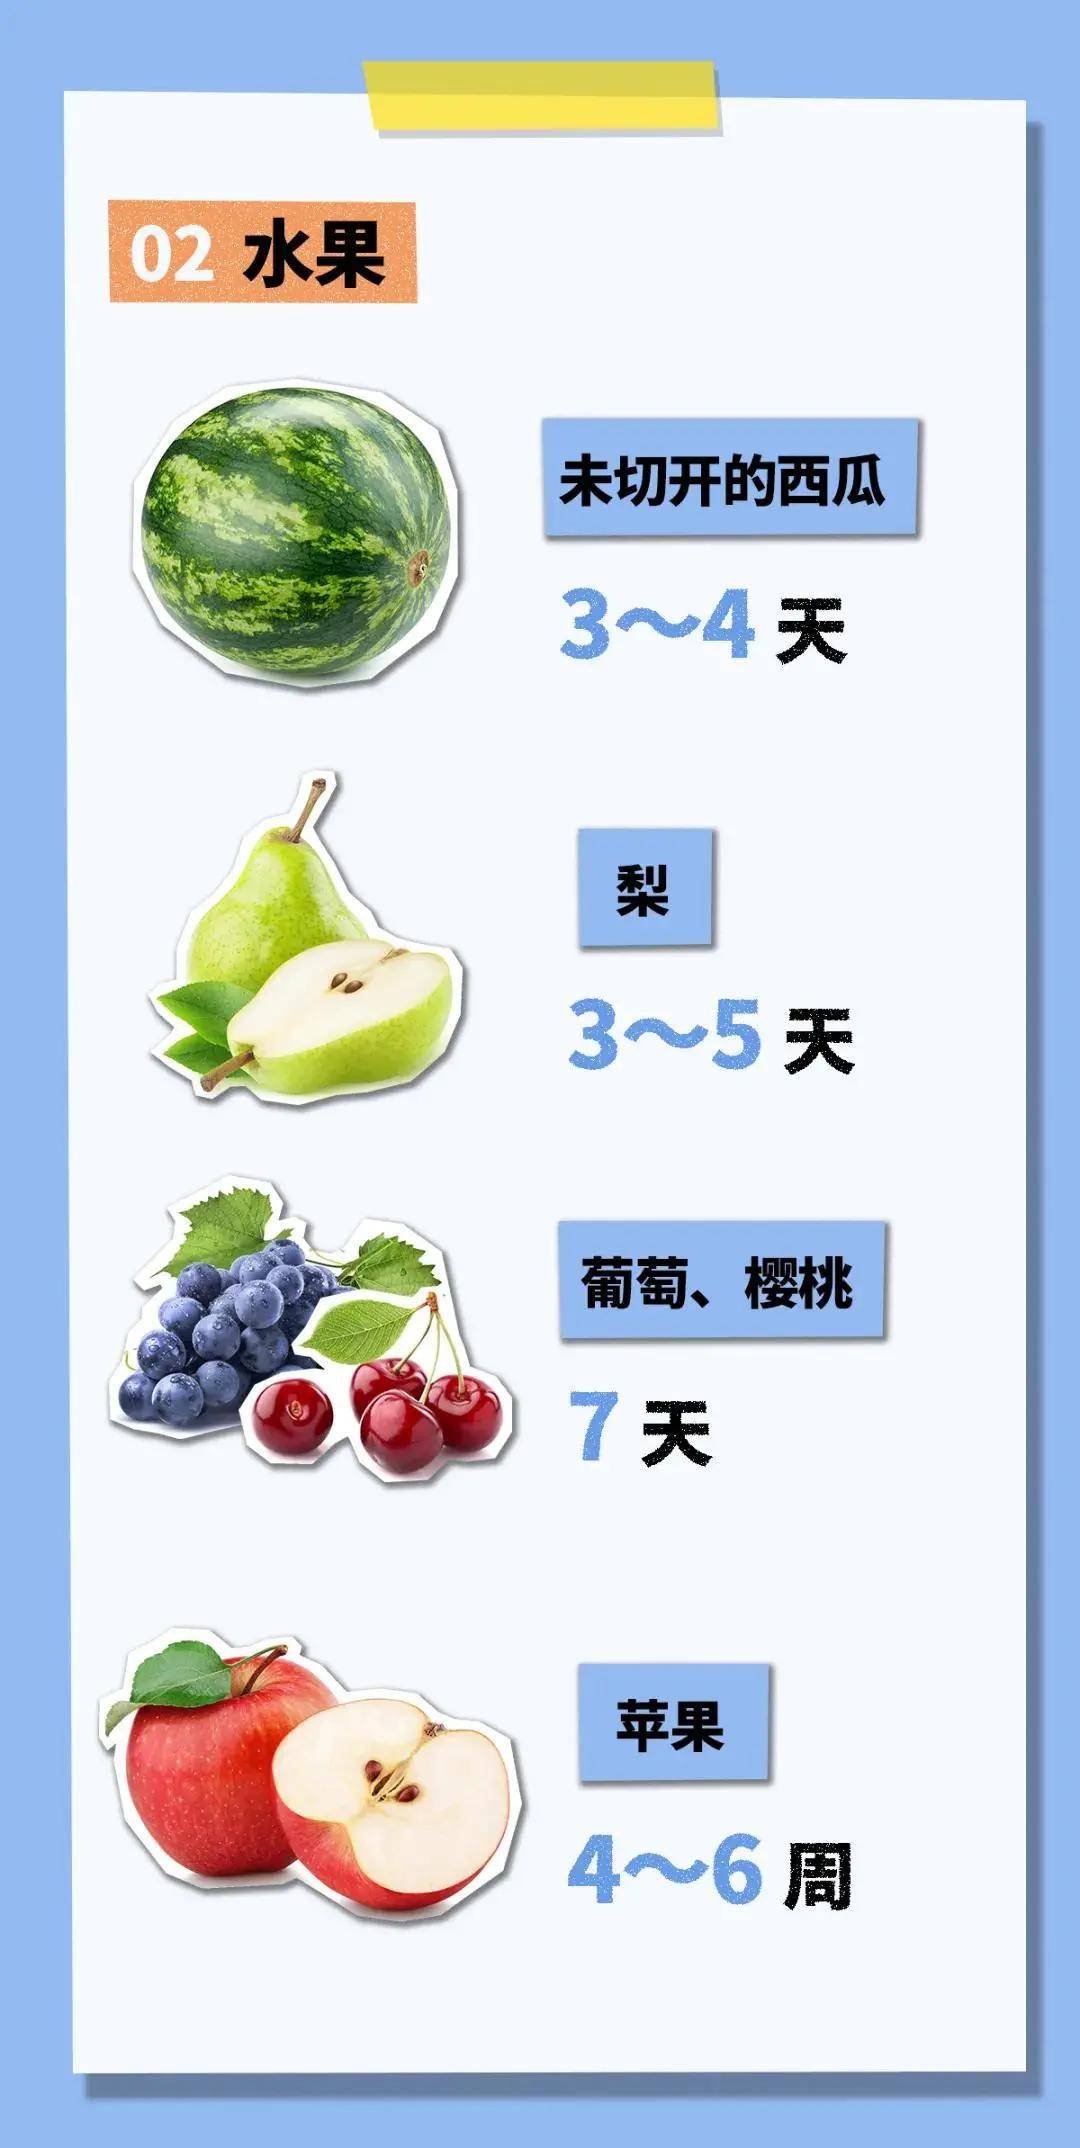 冰箱里的食物能放多久？绿叶菜4天、梨5天、低温牛奶7天